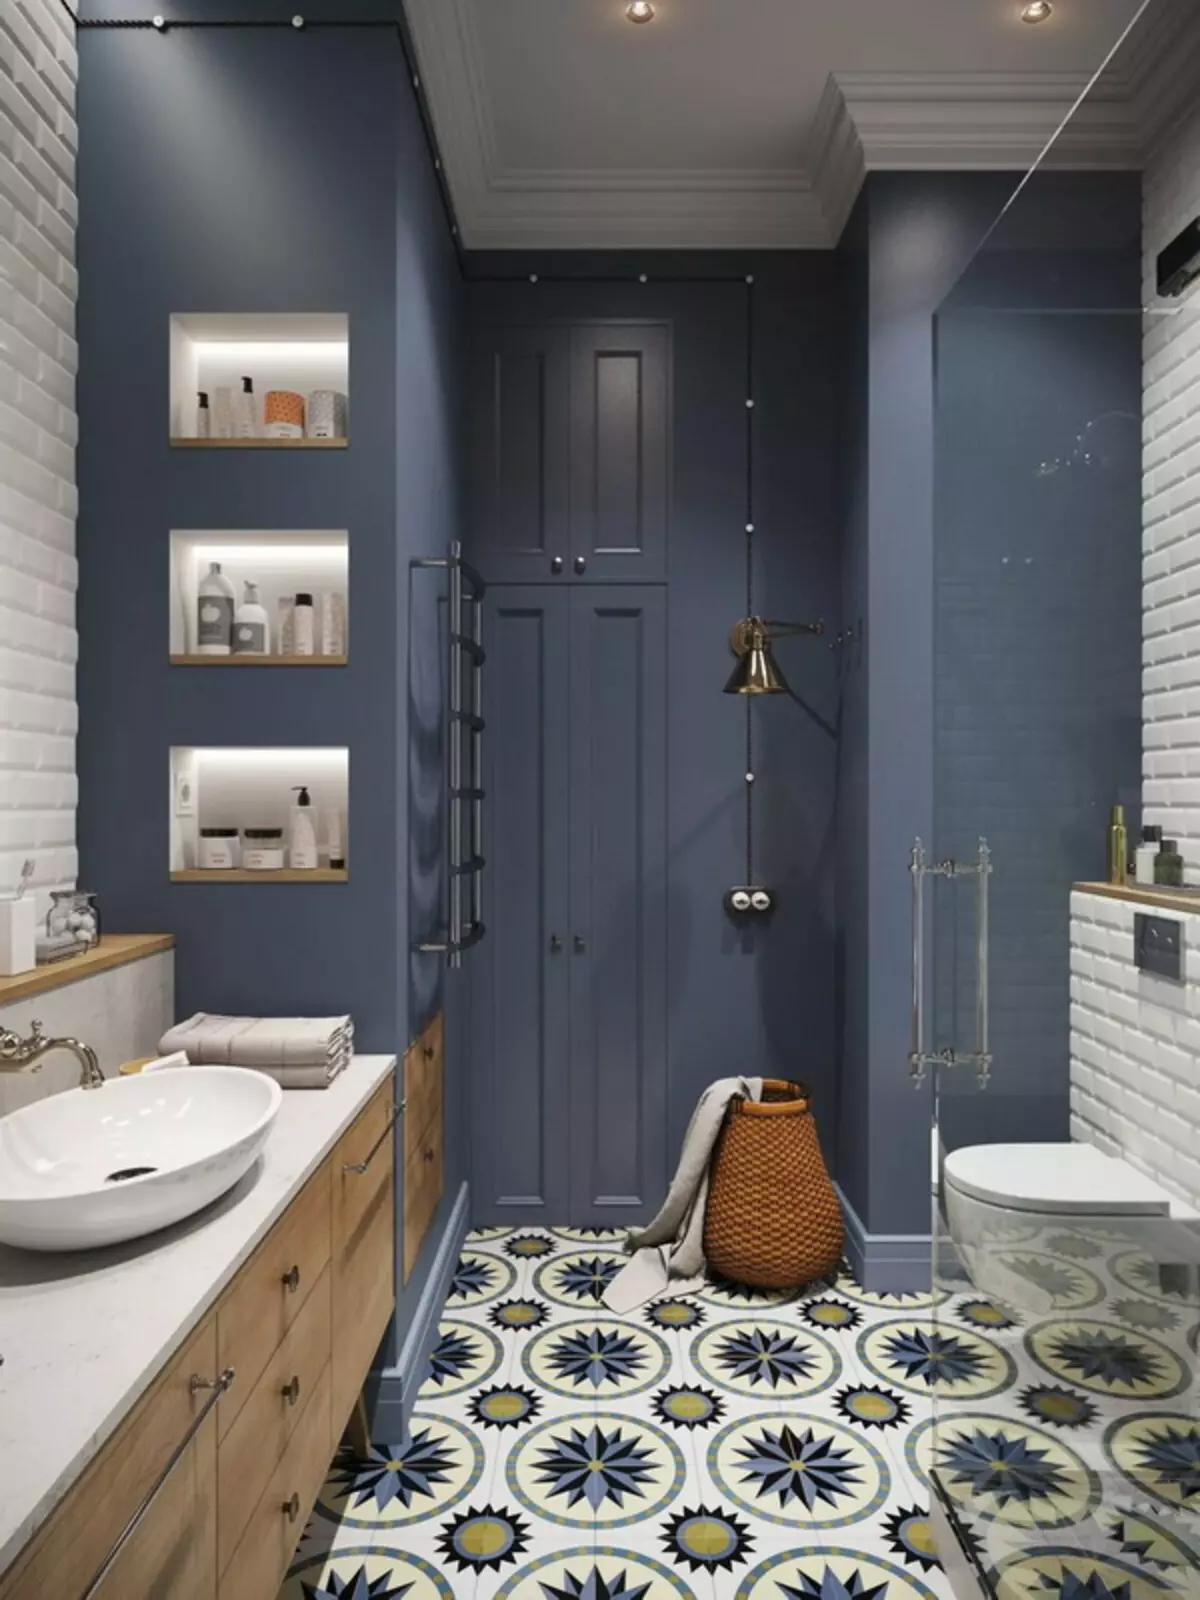 Badezimmer im skandinavischen Stil (66 Fotos): Innenarchitektur von einem kleinen Raum 3 und 4 Quadratmetern. M, die Ideen des Designs eines weißen Badezimmers, der Wahl des Zubehörs 21439_61